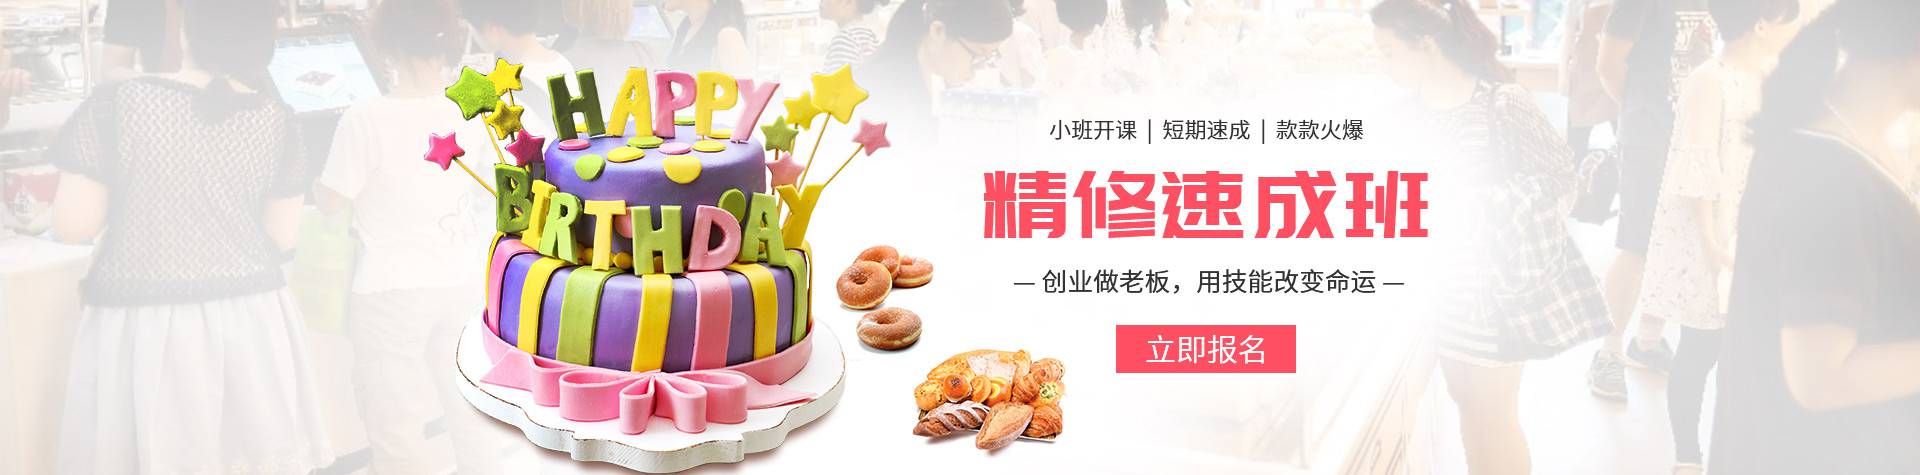 蛋糕课程定制,竞博job官网位于东莞,欢迎咨询,提供免费报价.